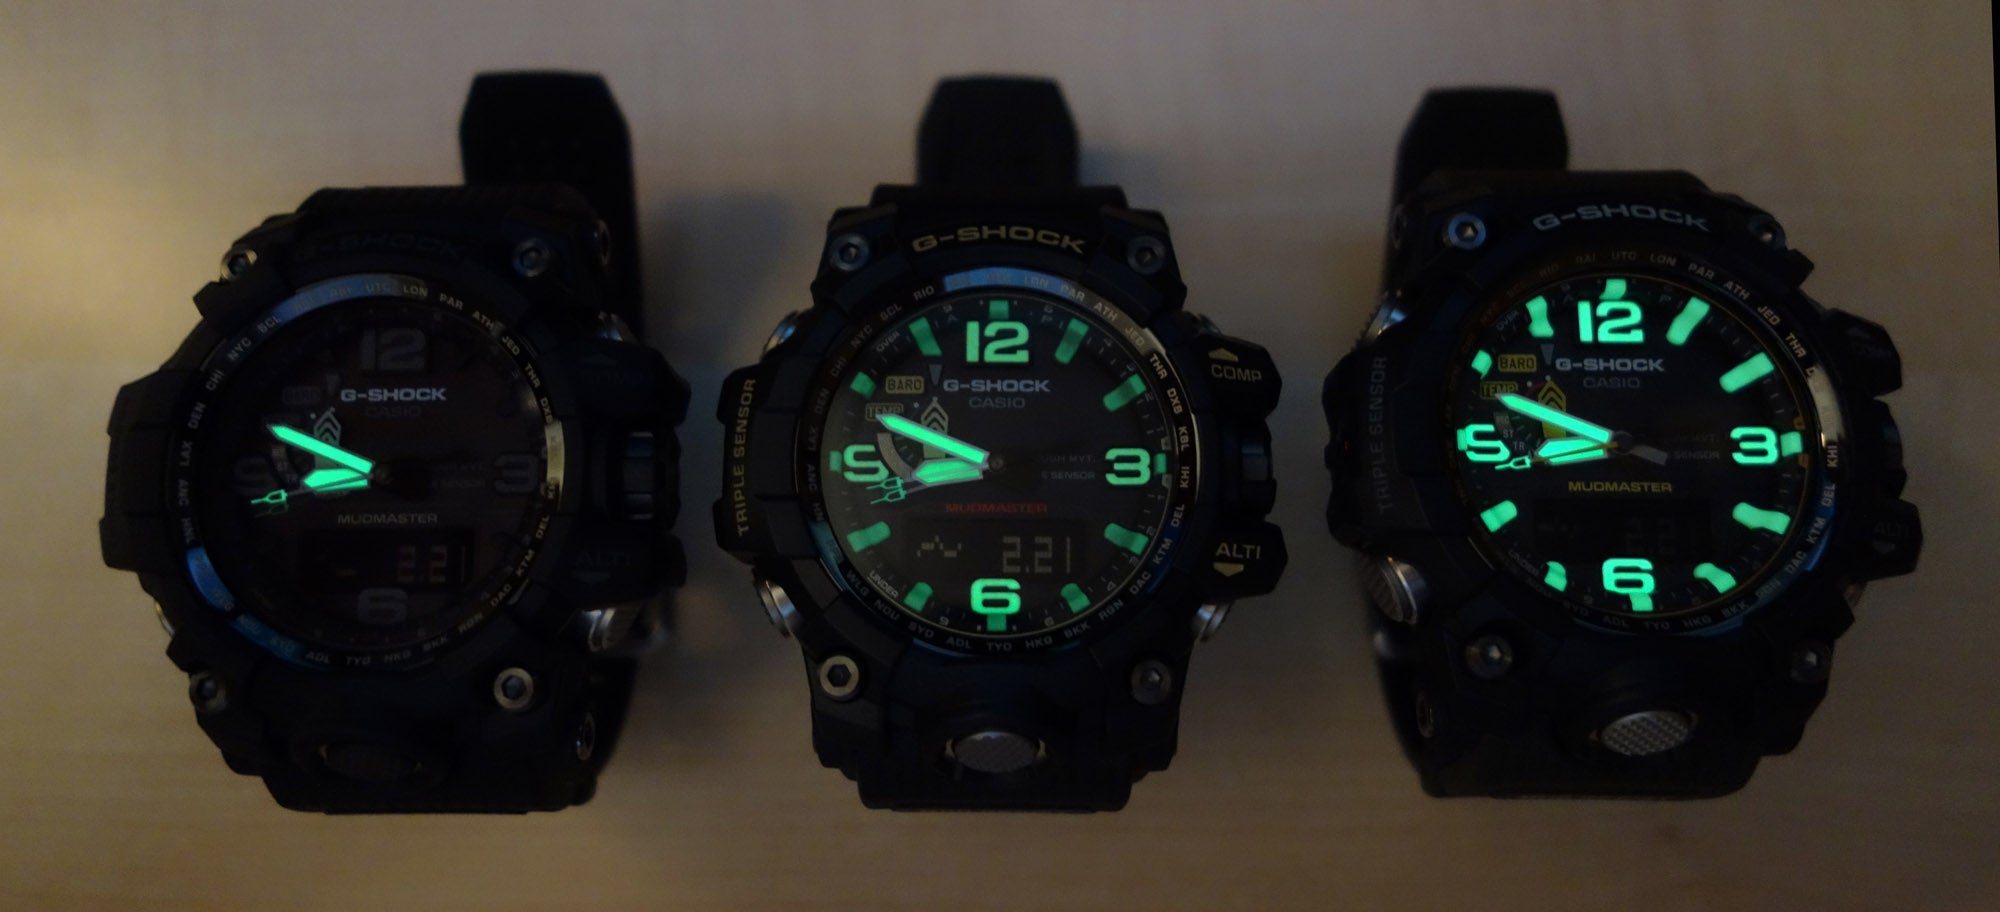 G-shock Best luminous watch that glows in the dark